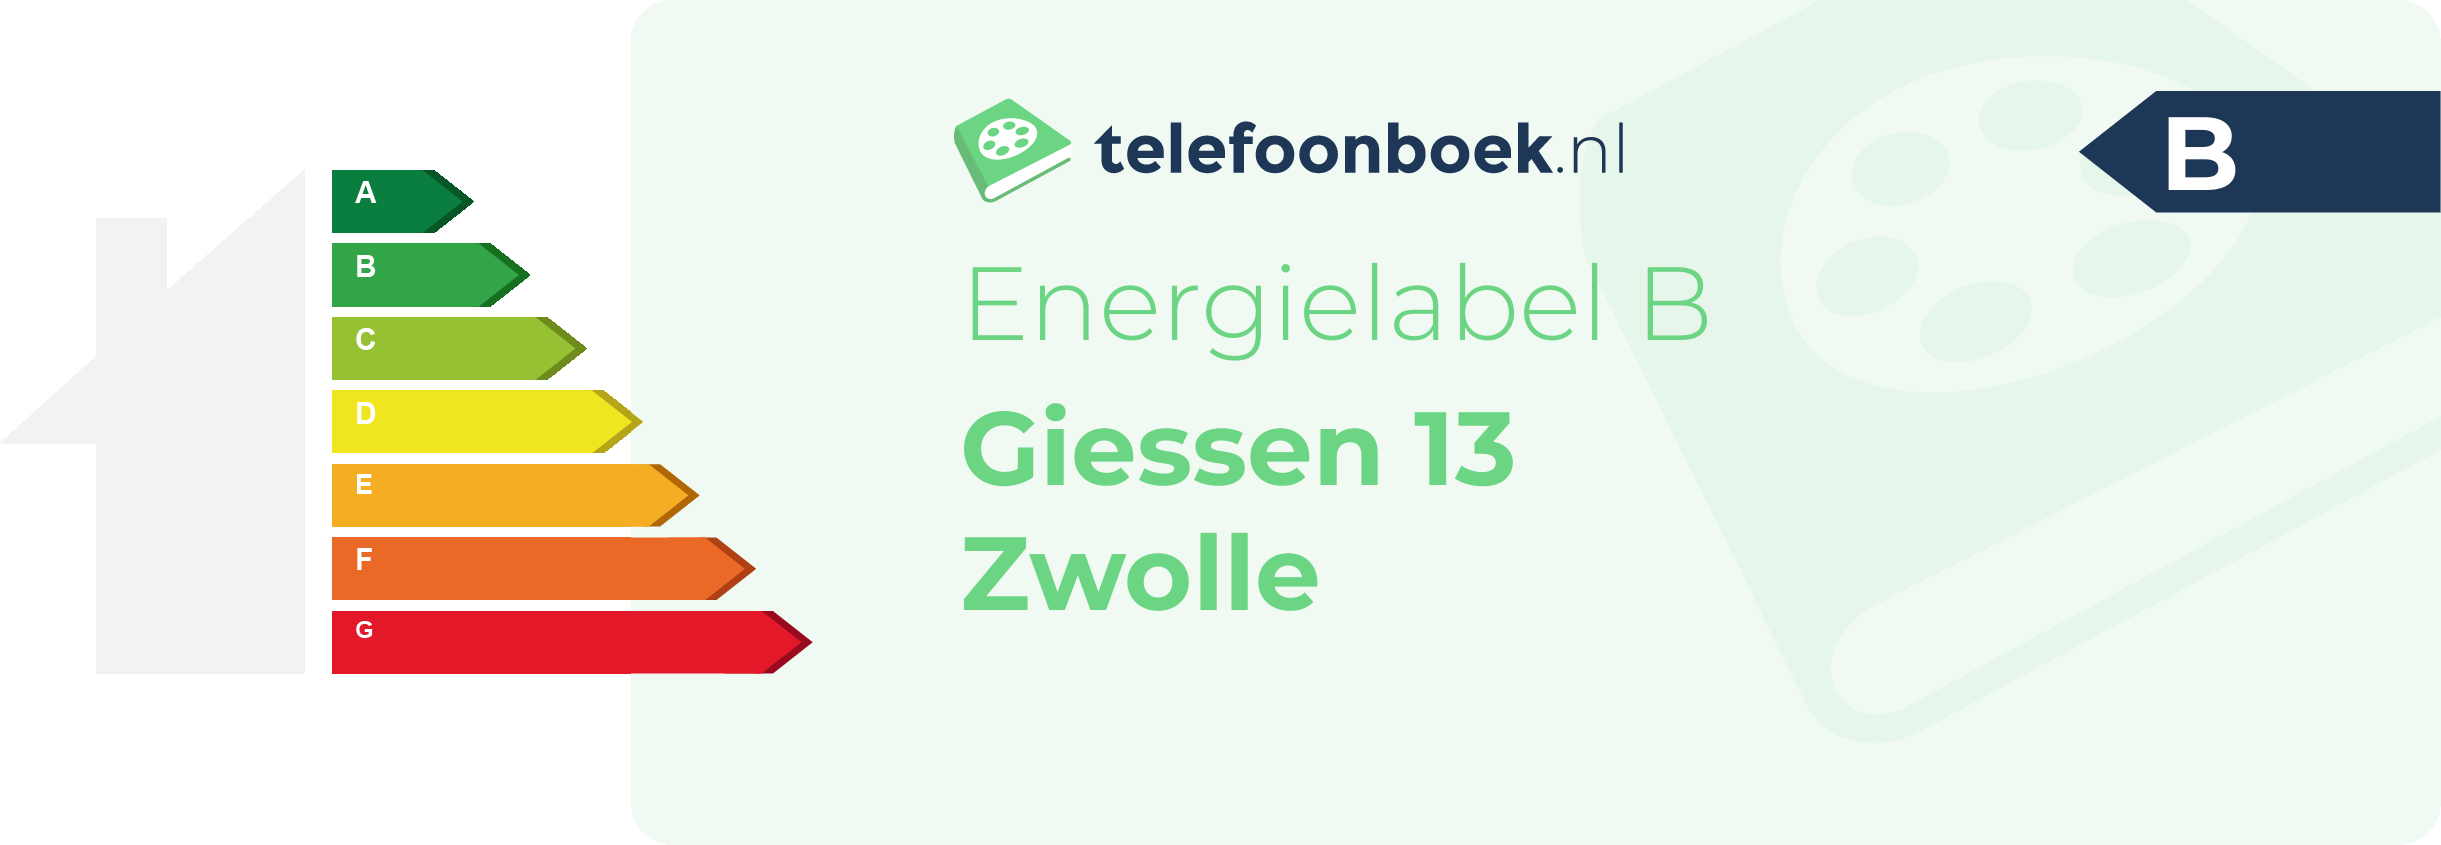 Energielabel Giessen 13 Zwolle